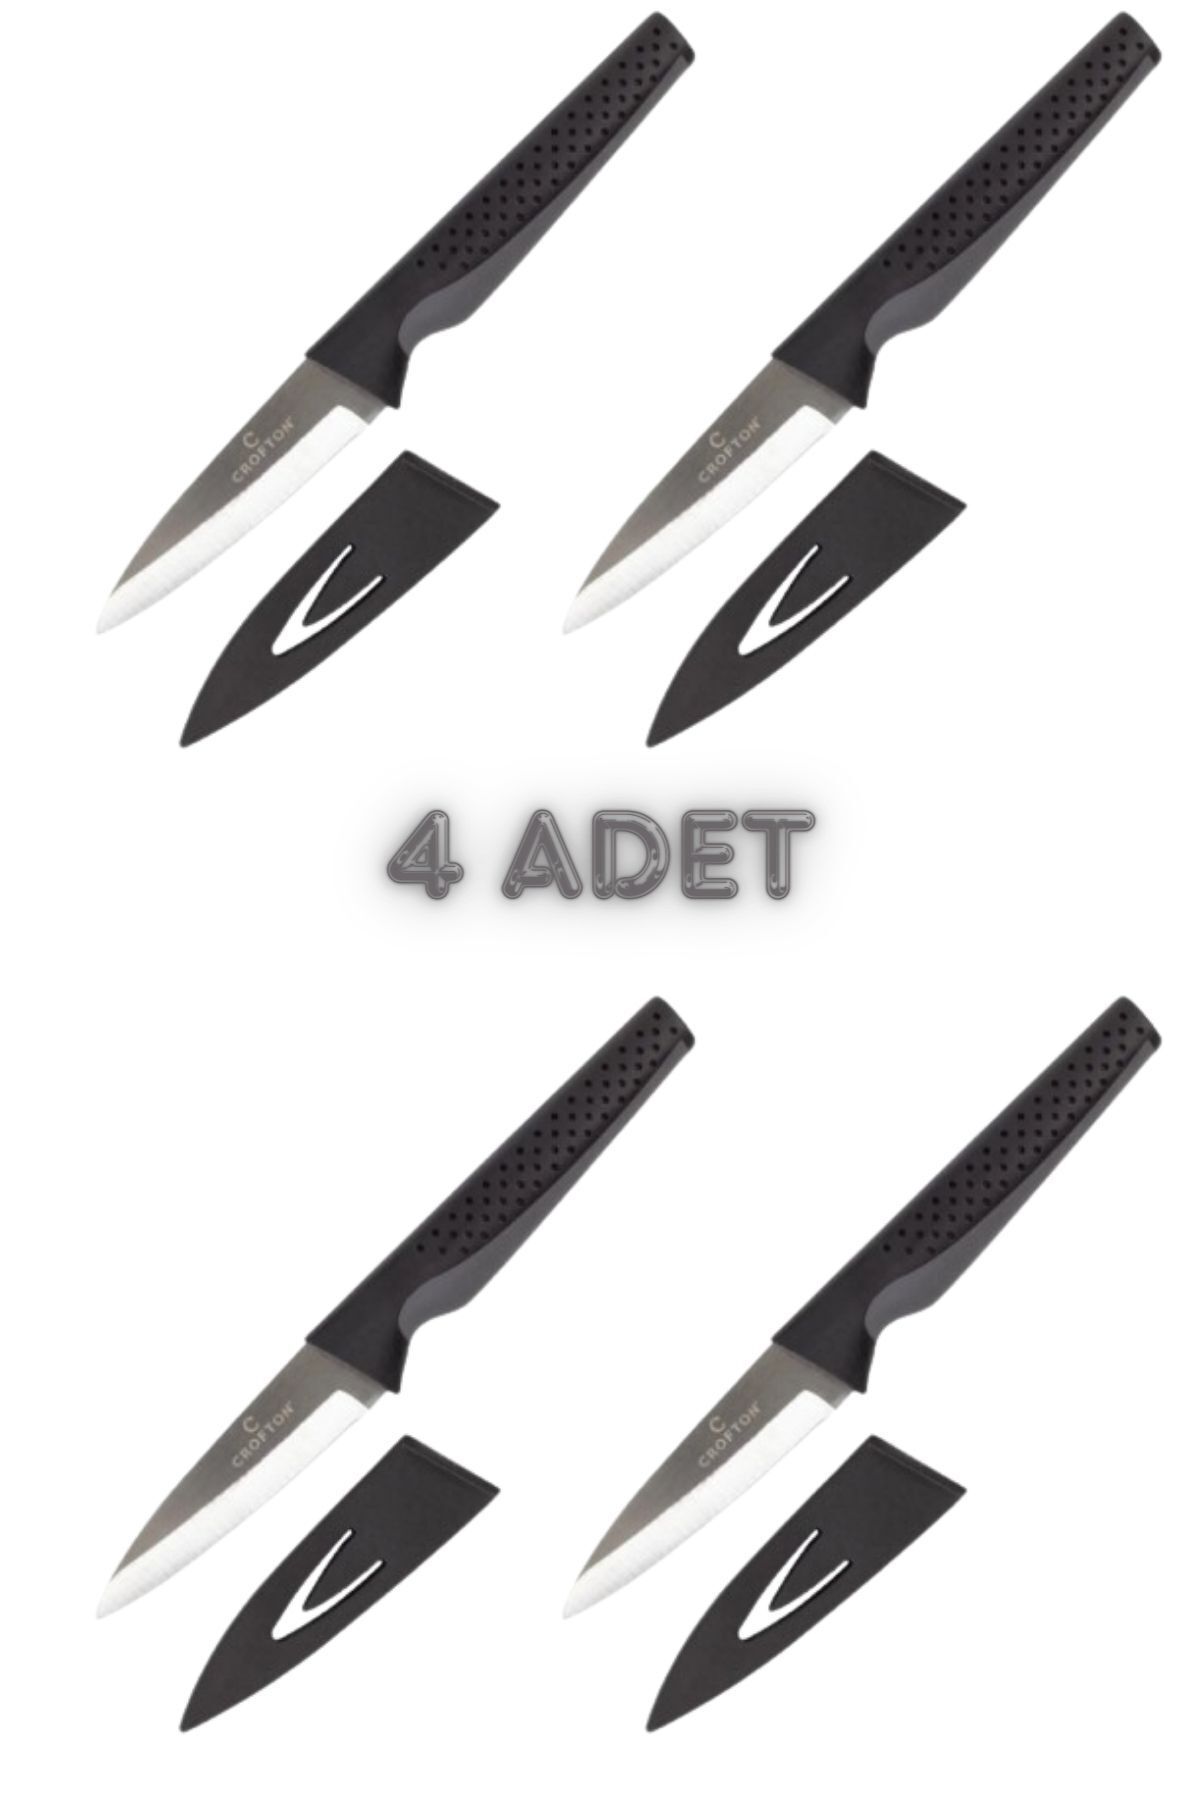 Axe Tools 4 Adet Titanyum Crafton Bıçak 20 Cm Pratik Kullanım Çok Amaçlı Titanyum Şef Bıçağı Koruma Kapaklı